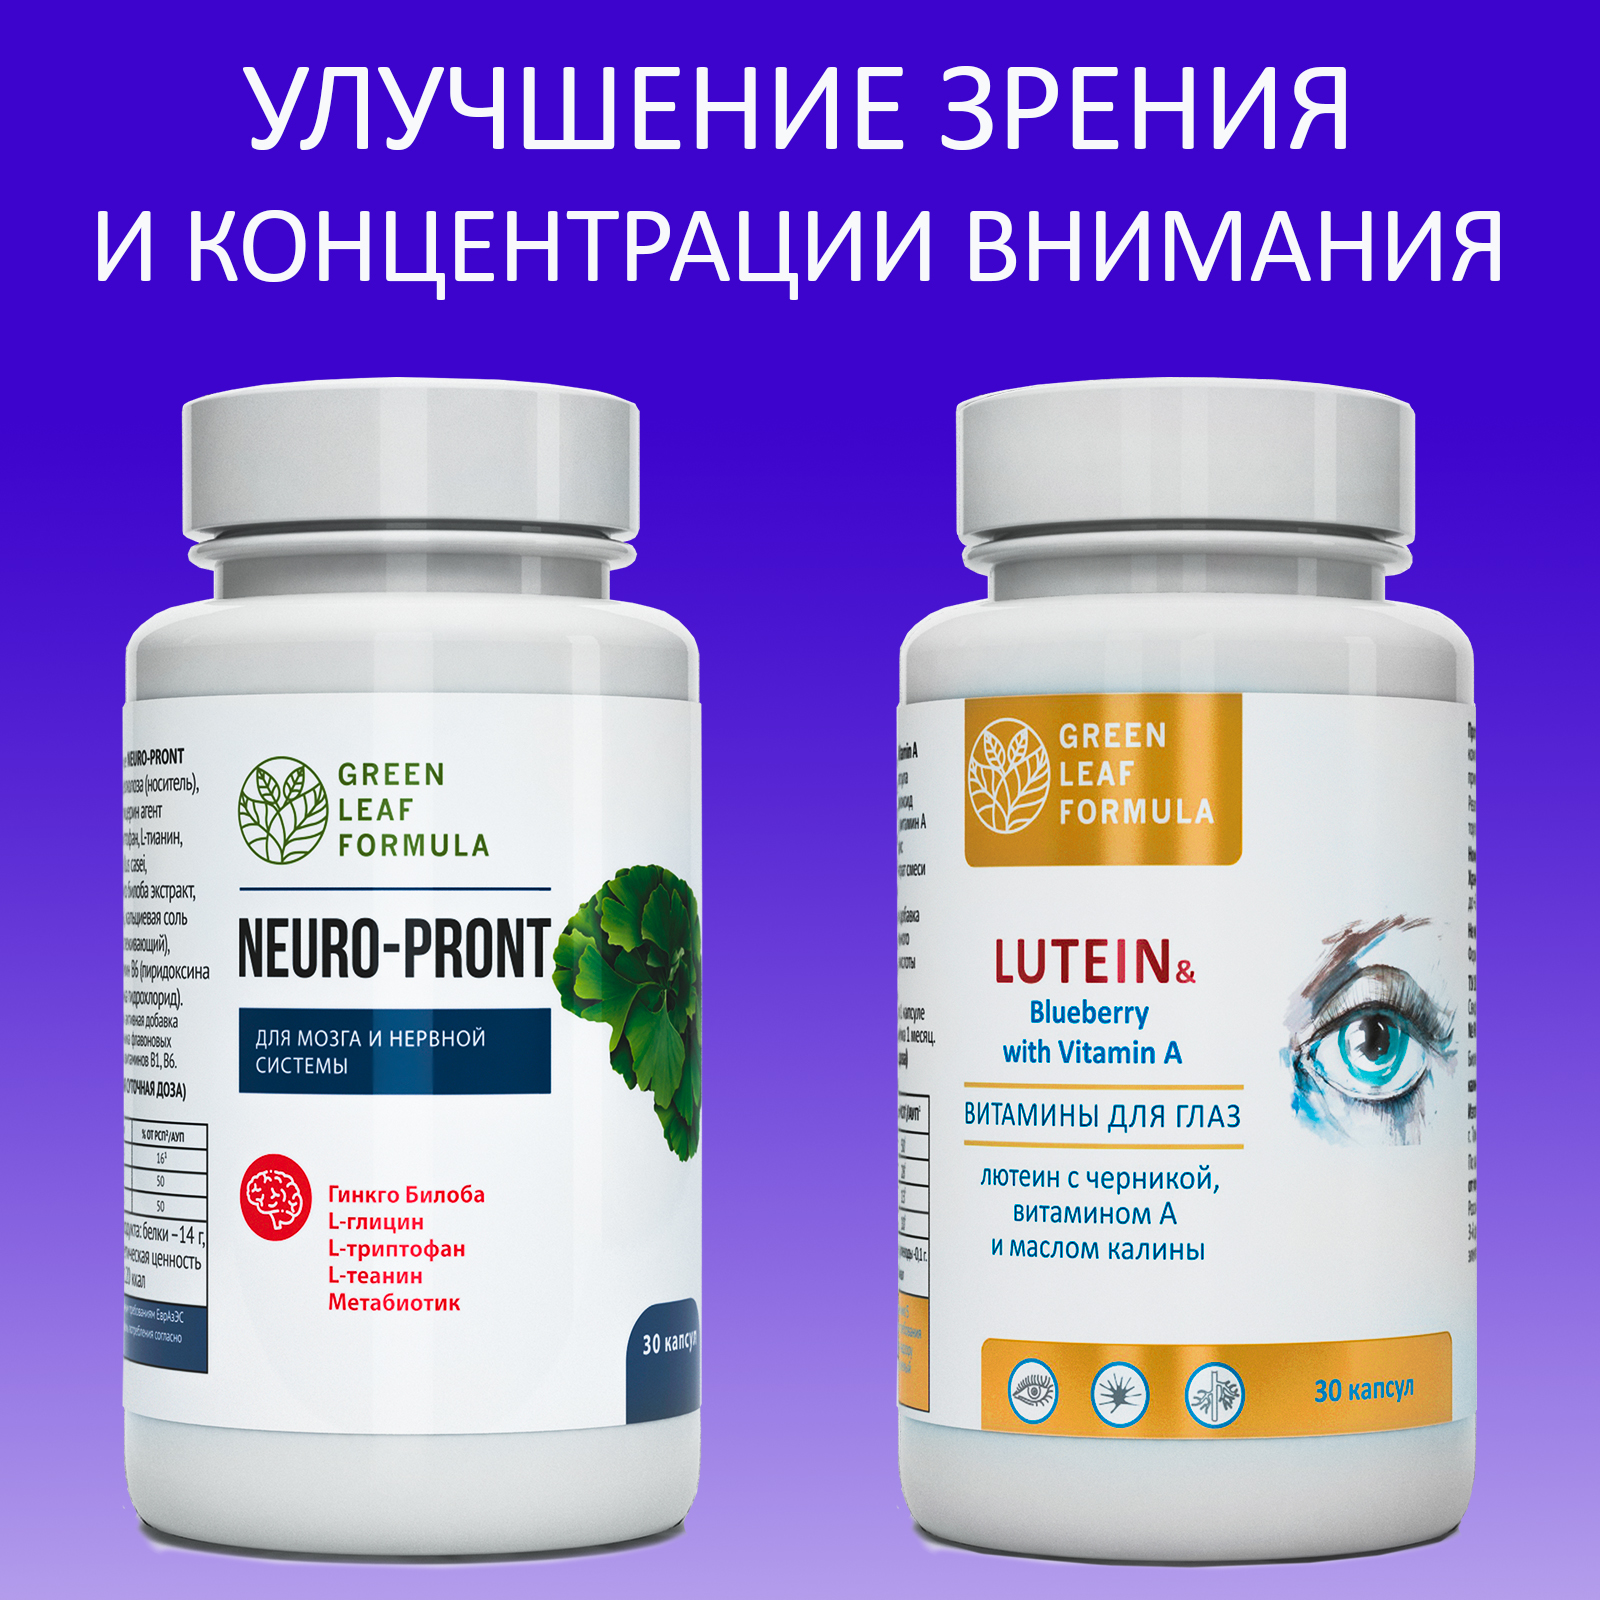 Витамины для глаз и мозга Green Leaf Formula для нервной системы триптофан лютеин комплекс с черникой для глаз 2 банки - фото 1